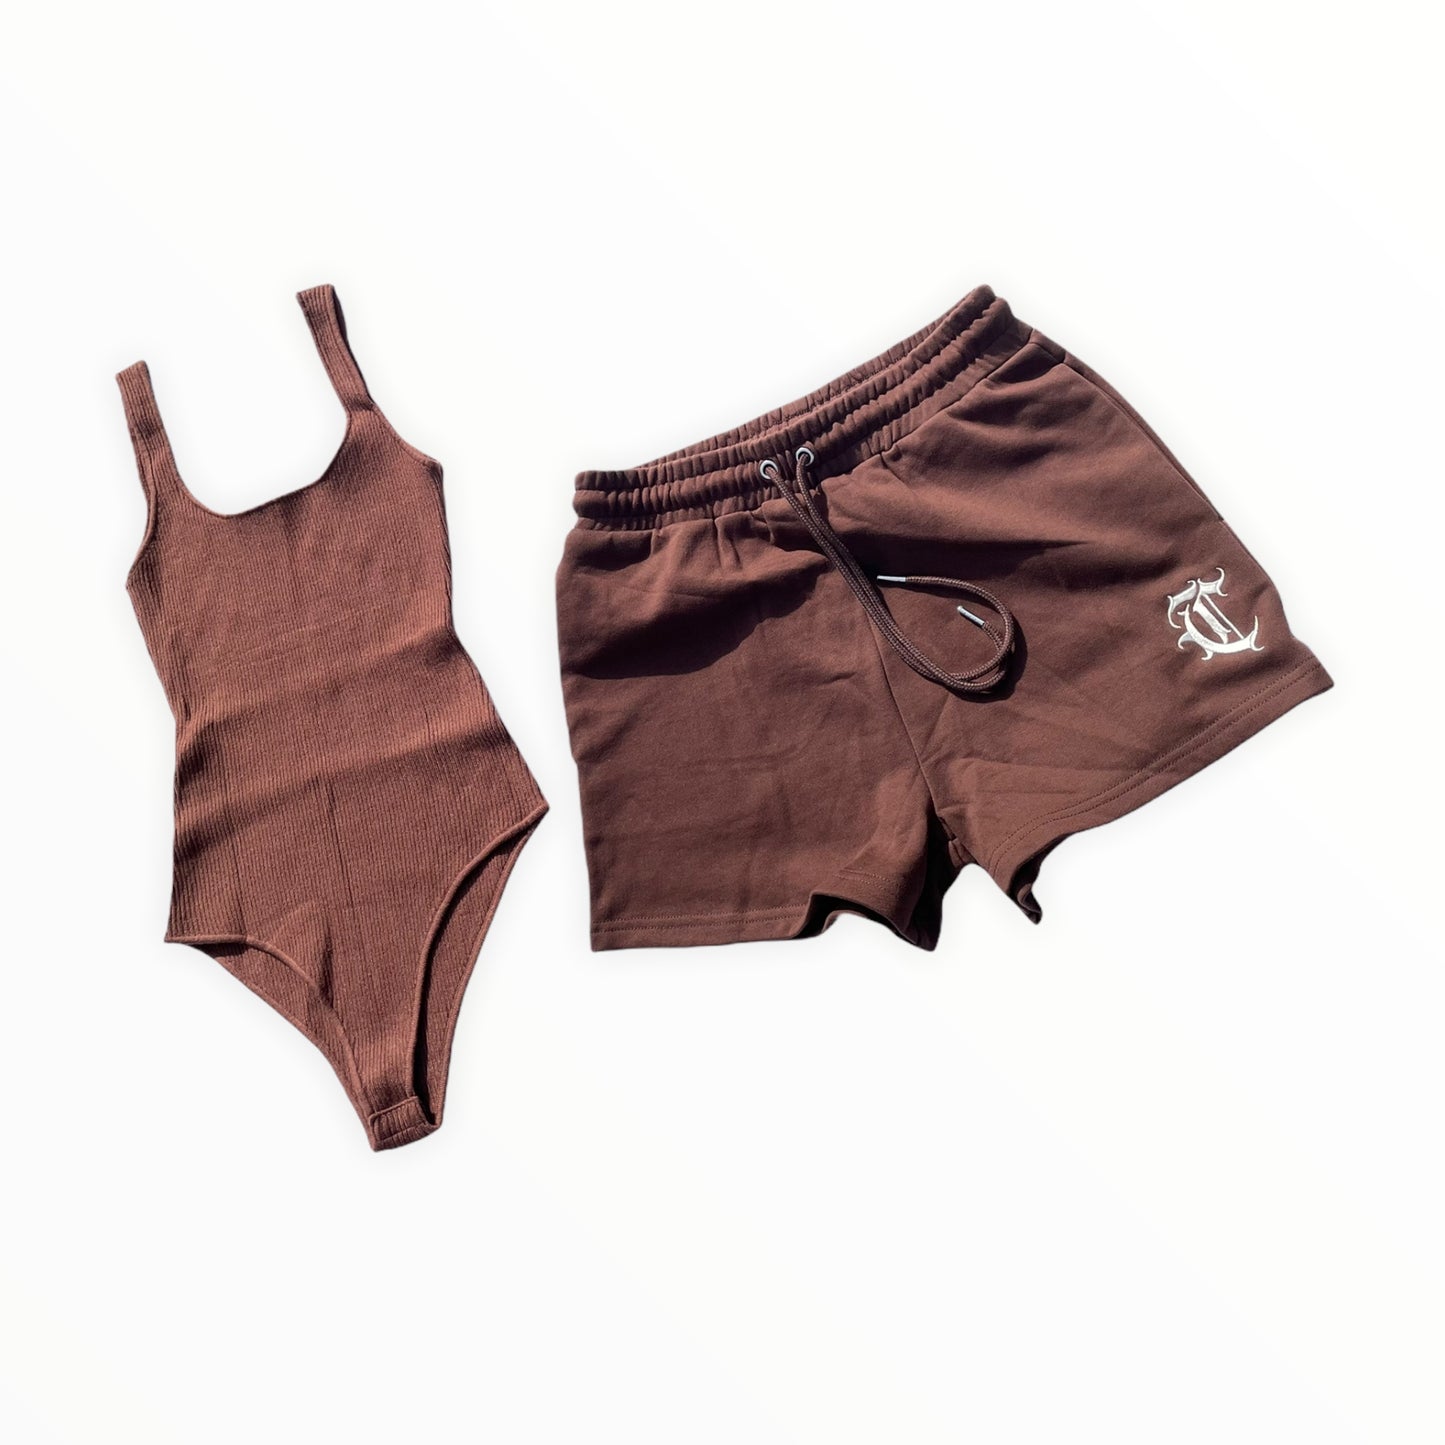 Chosen Shorts Set (Brown, Ivory)